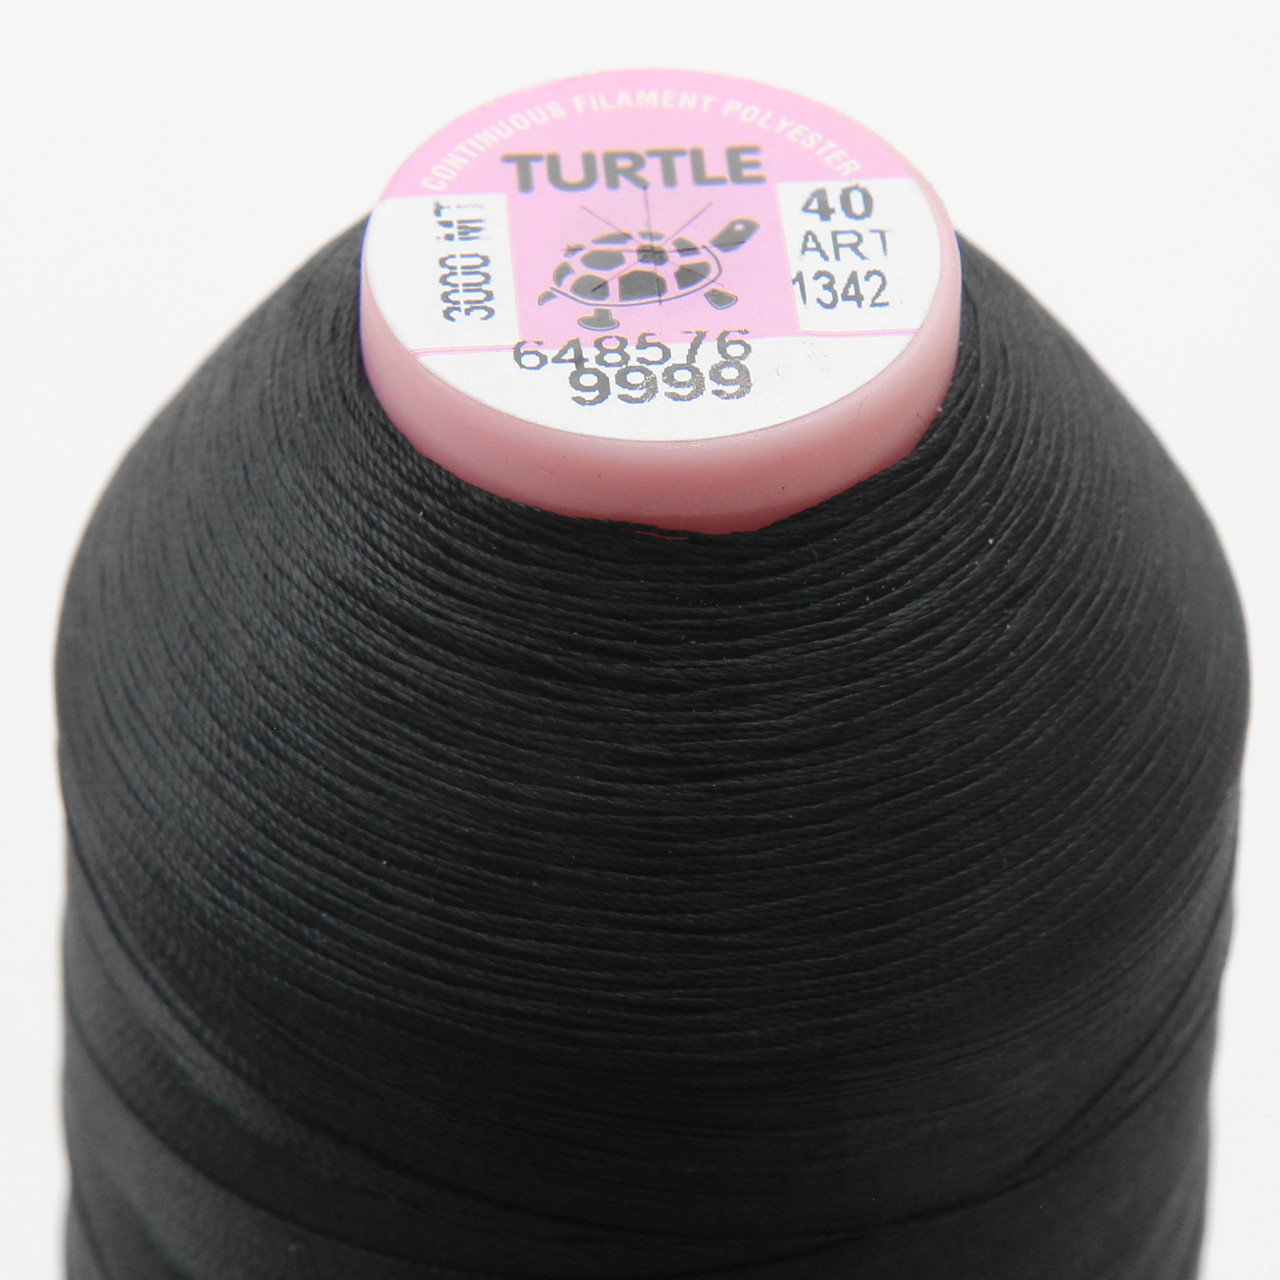 Нить TURTLE (Турция) №30 цвет 9999 для оверлока, черный, длина 2500м. детальная фотка